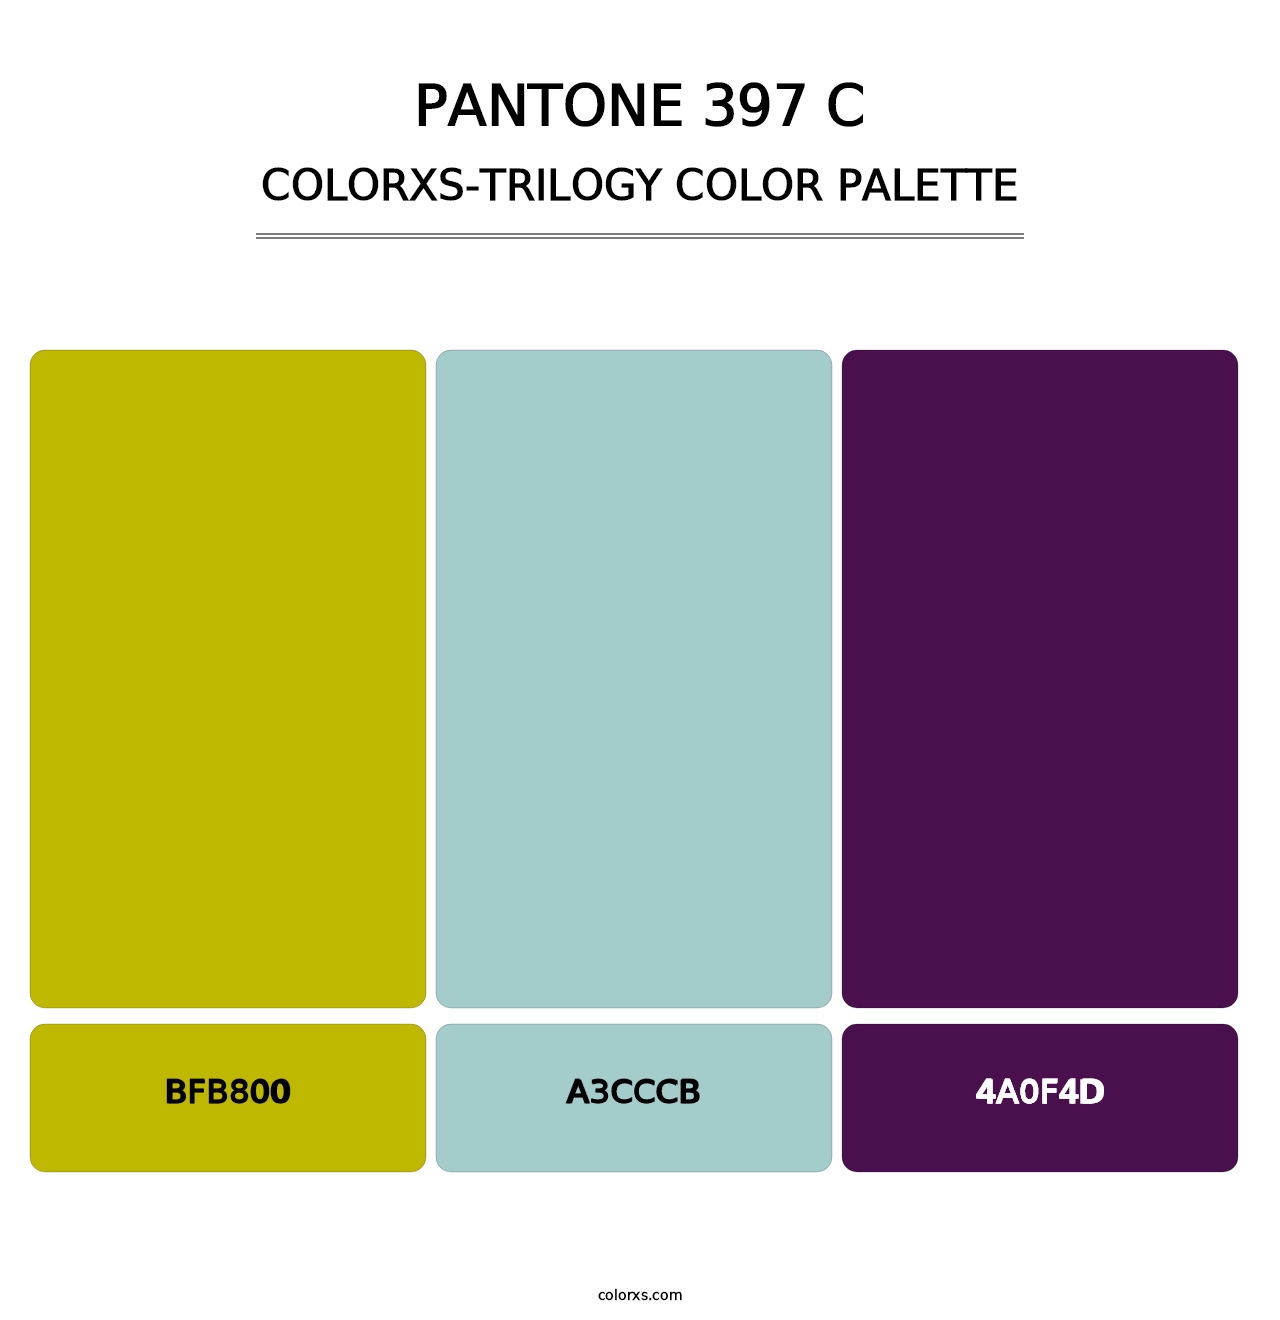 PANTONE 397 C - Colorxs Trilogy Palette